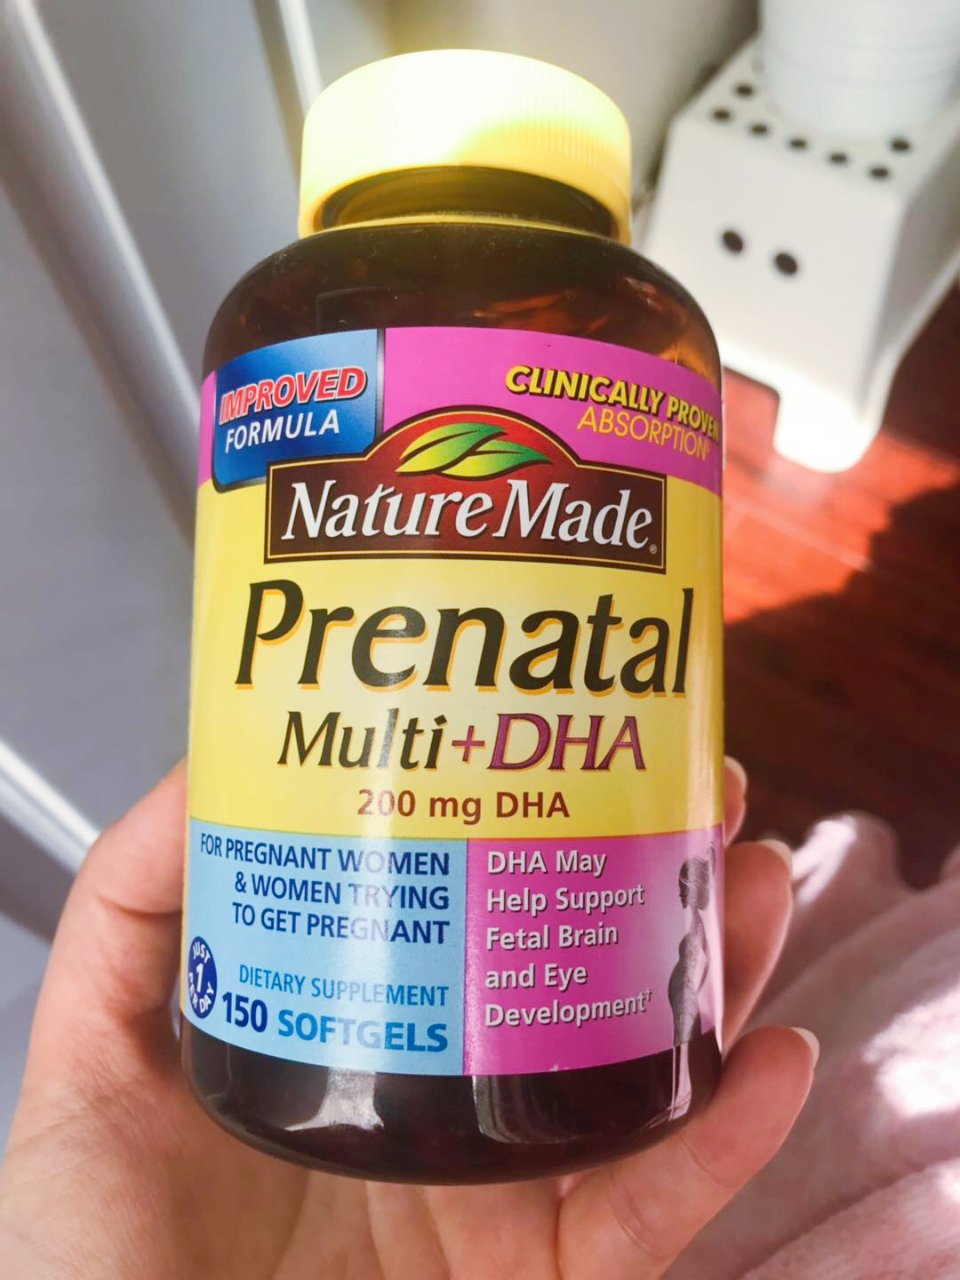 Nature Made,prenatal vitamins